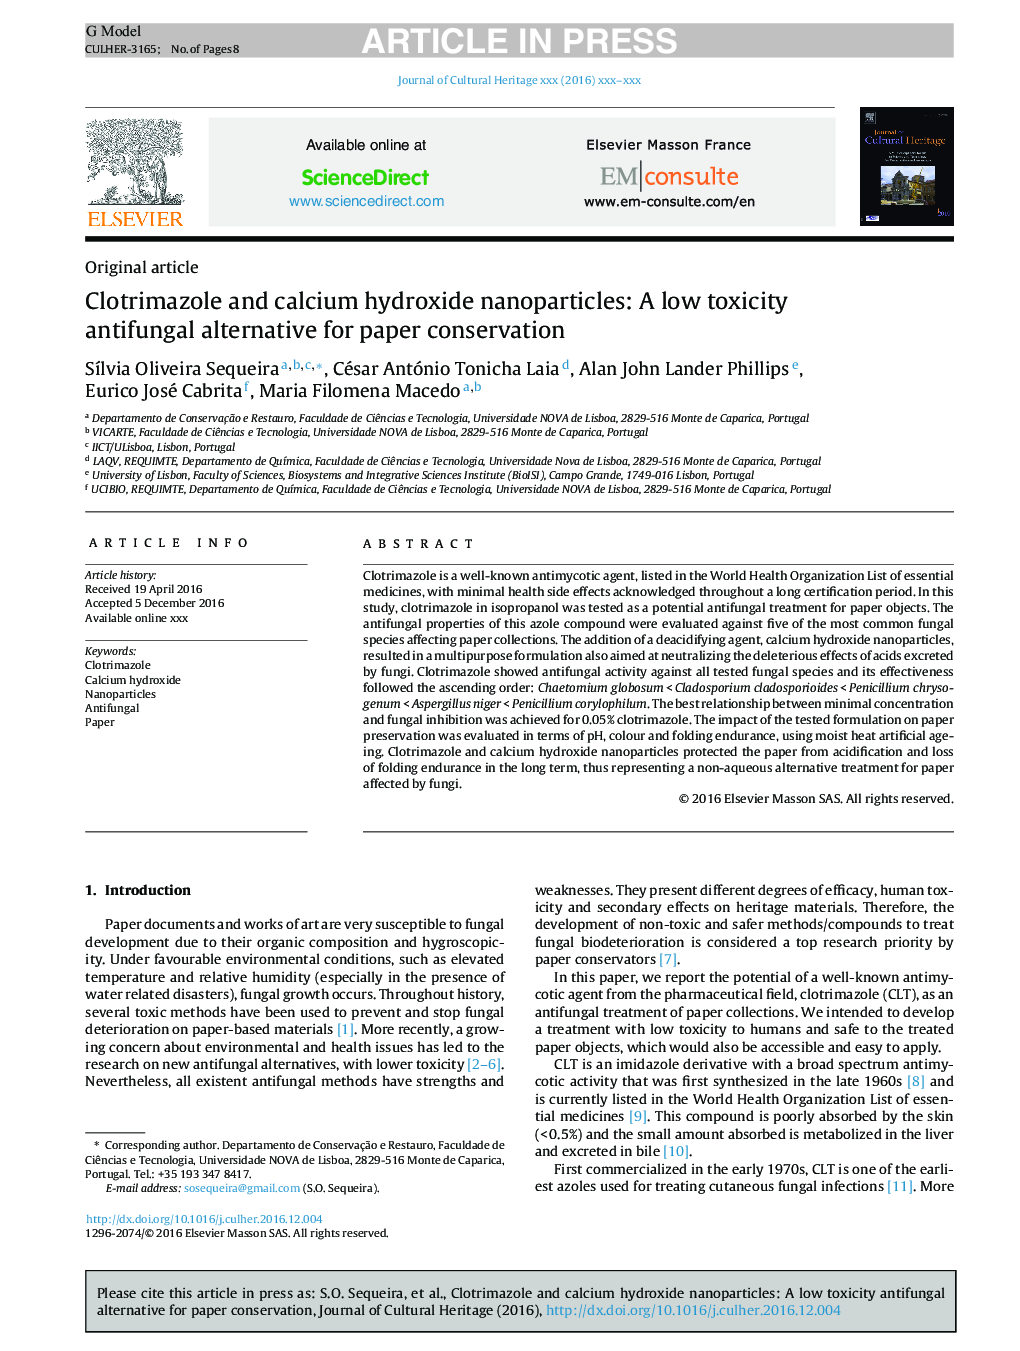 کلوتریمازول و نانوذرات هیدروکسید کلسیم: جایگزین ضد قارچی کم سمیت برای حفاظت کاغذ 